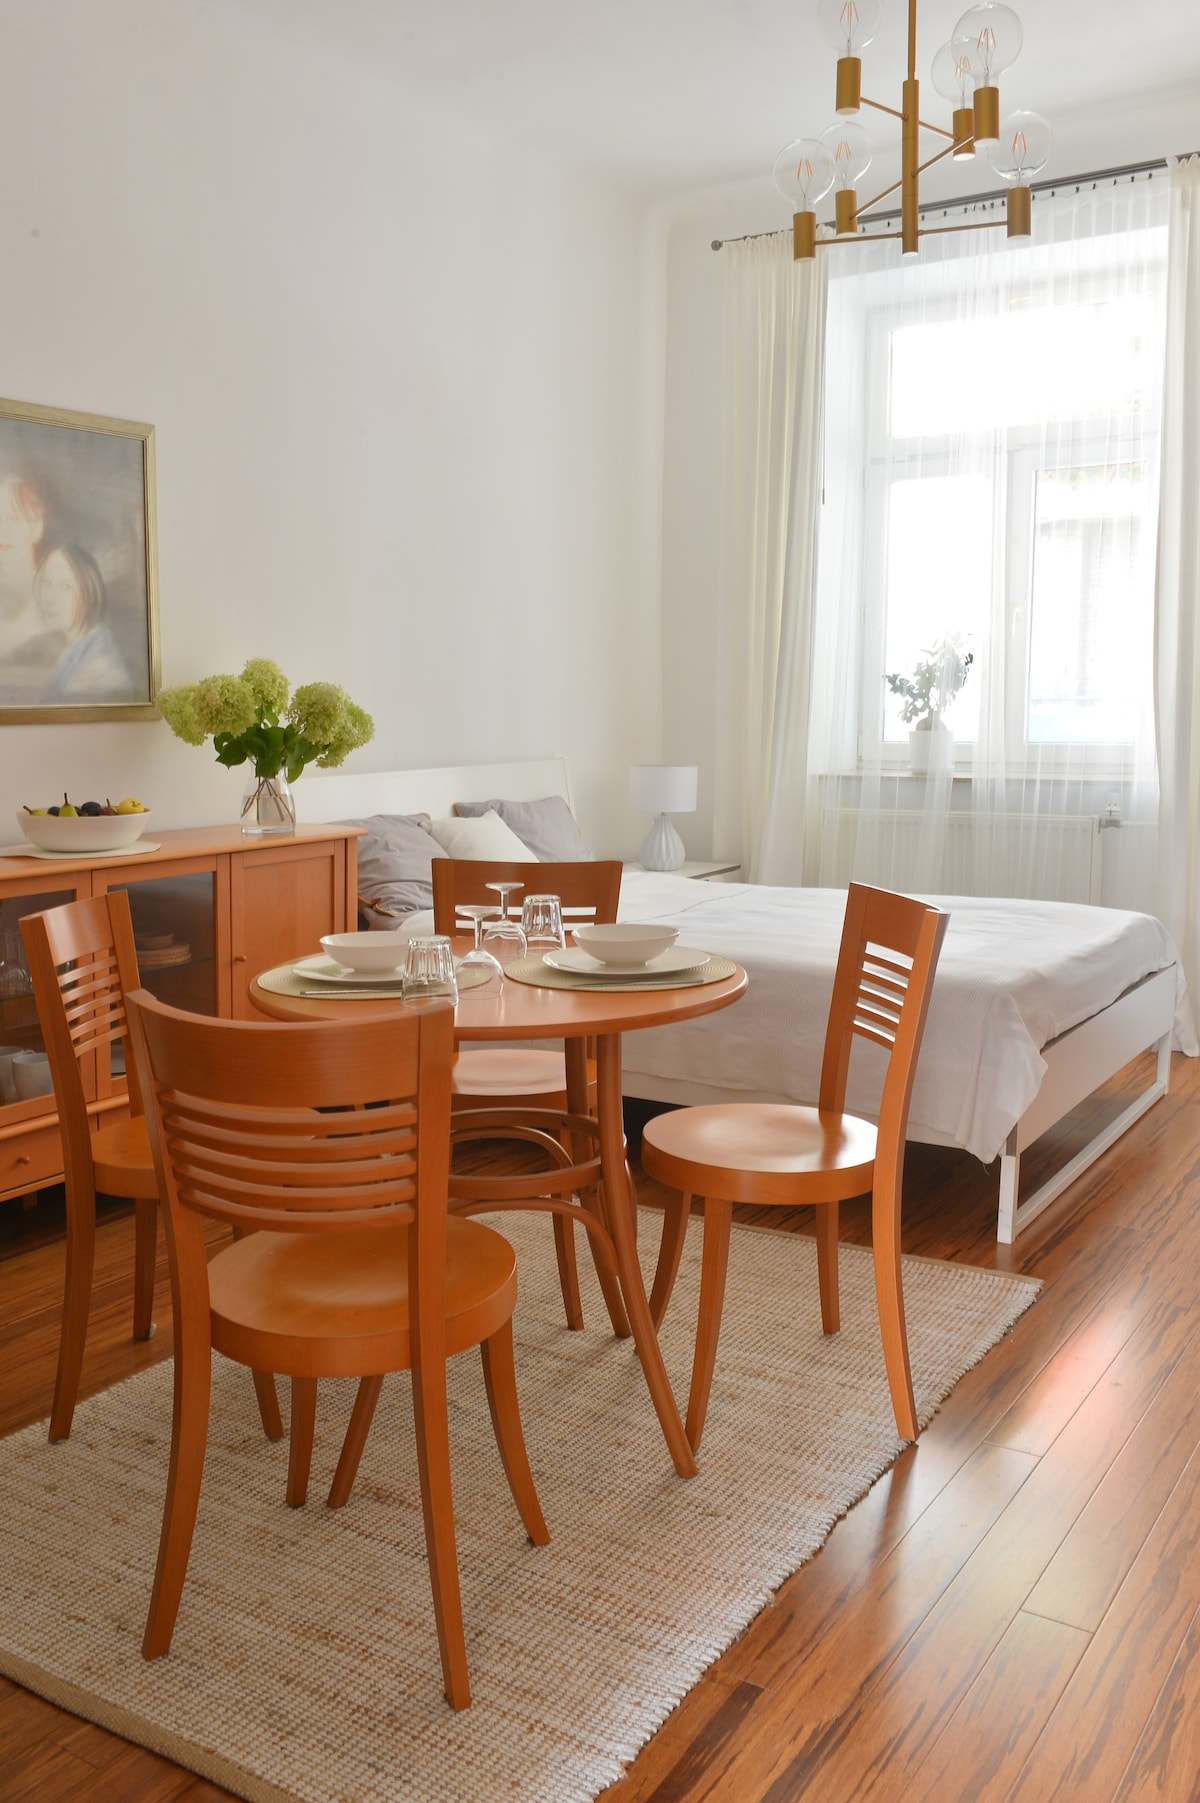 位于卢布尔雅那市中心的舒适单间公寓